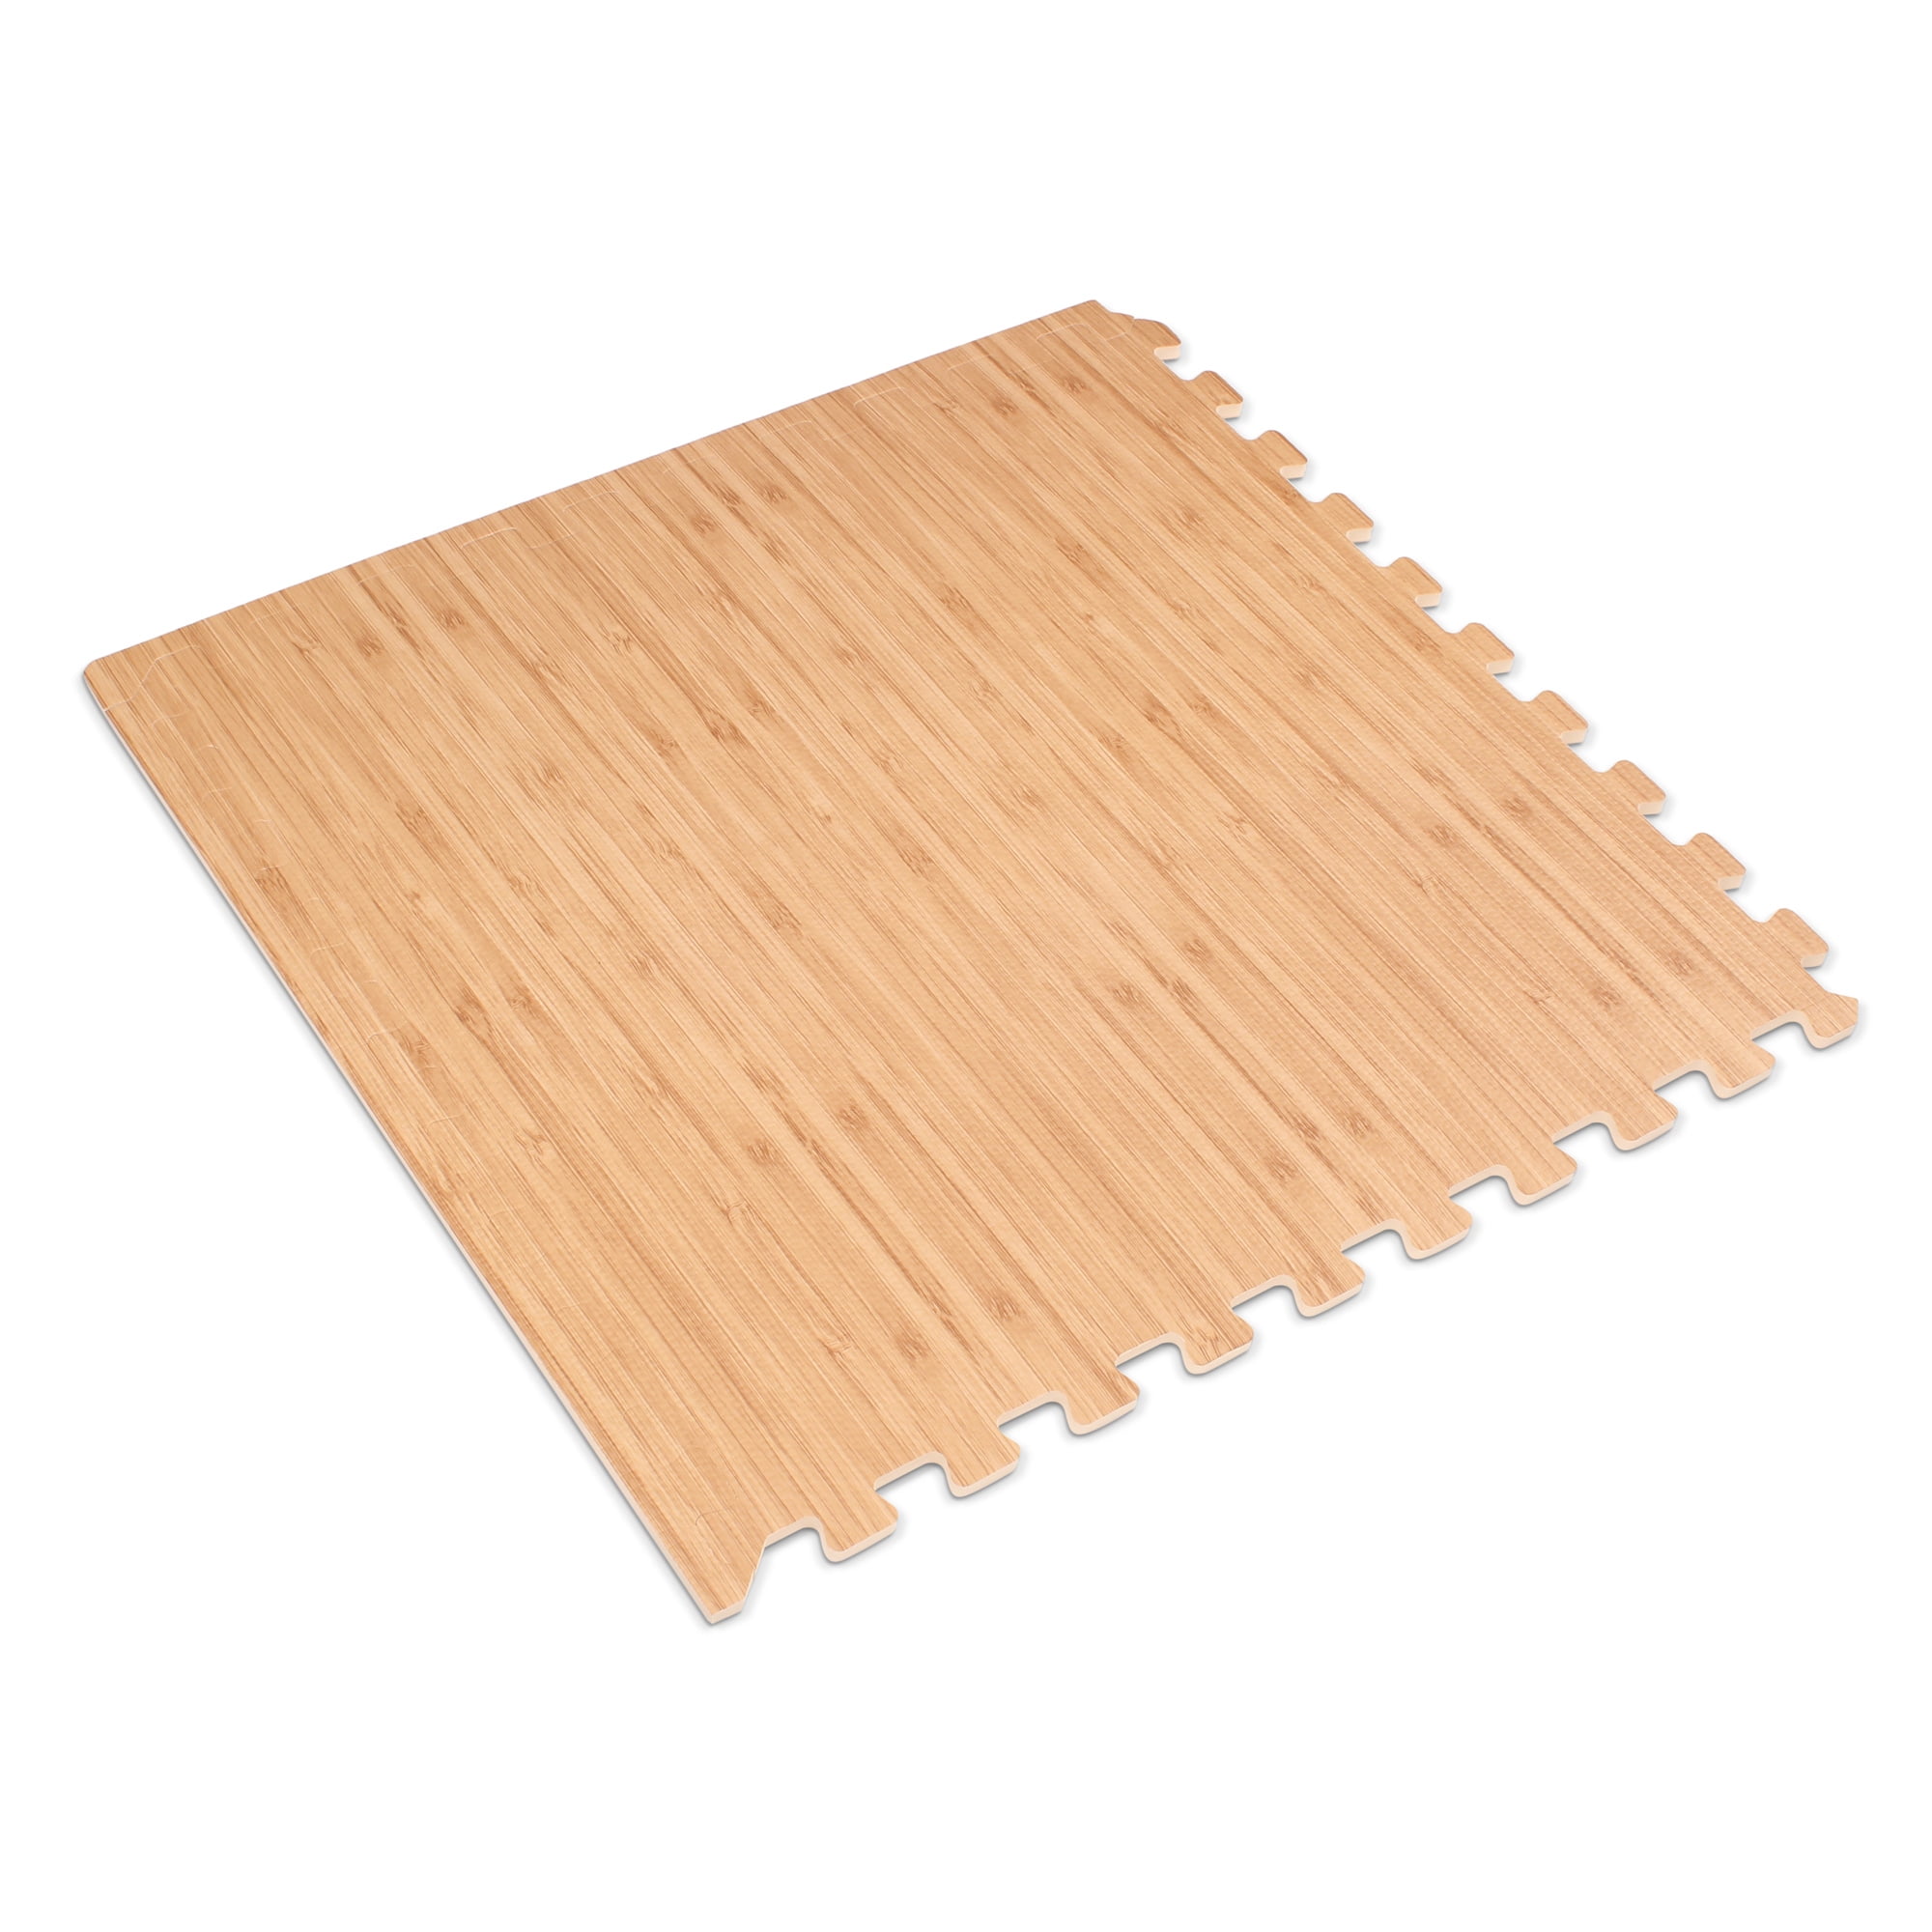 144 sqft yellow interlocking foam floor puzzle tile mat puzzle mat flooring 